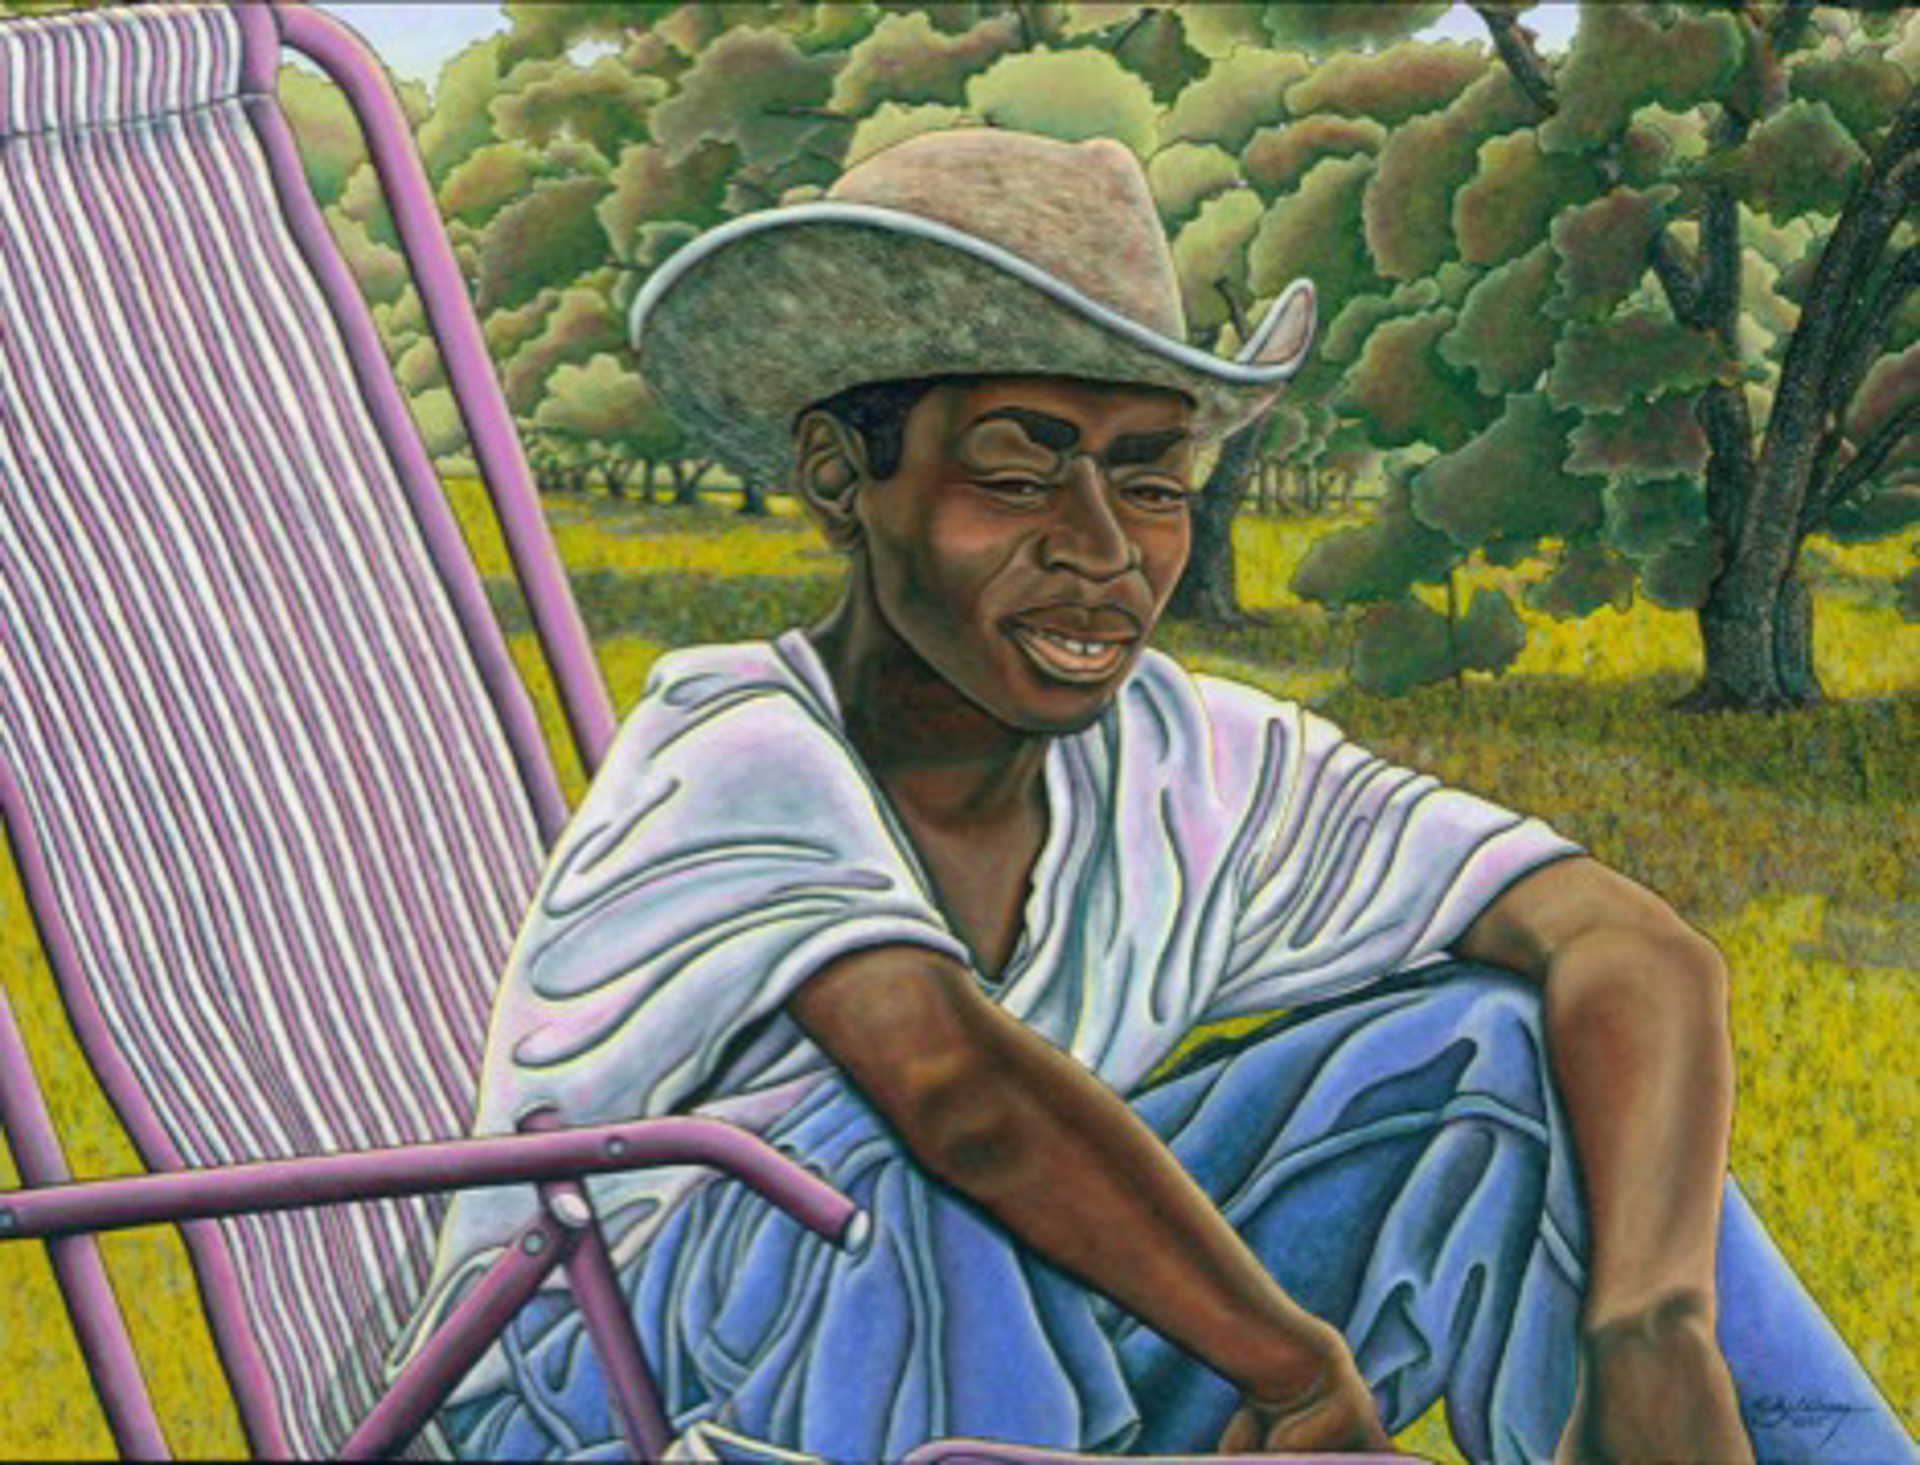 "Teenage Farmer" by Ricky Calloway